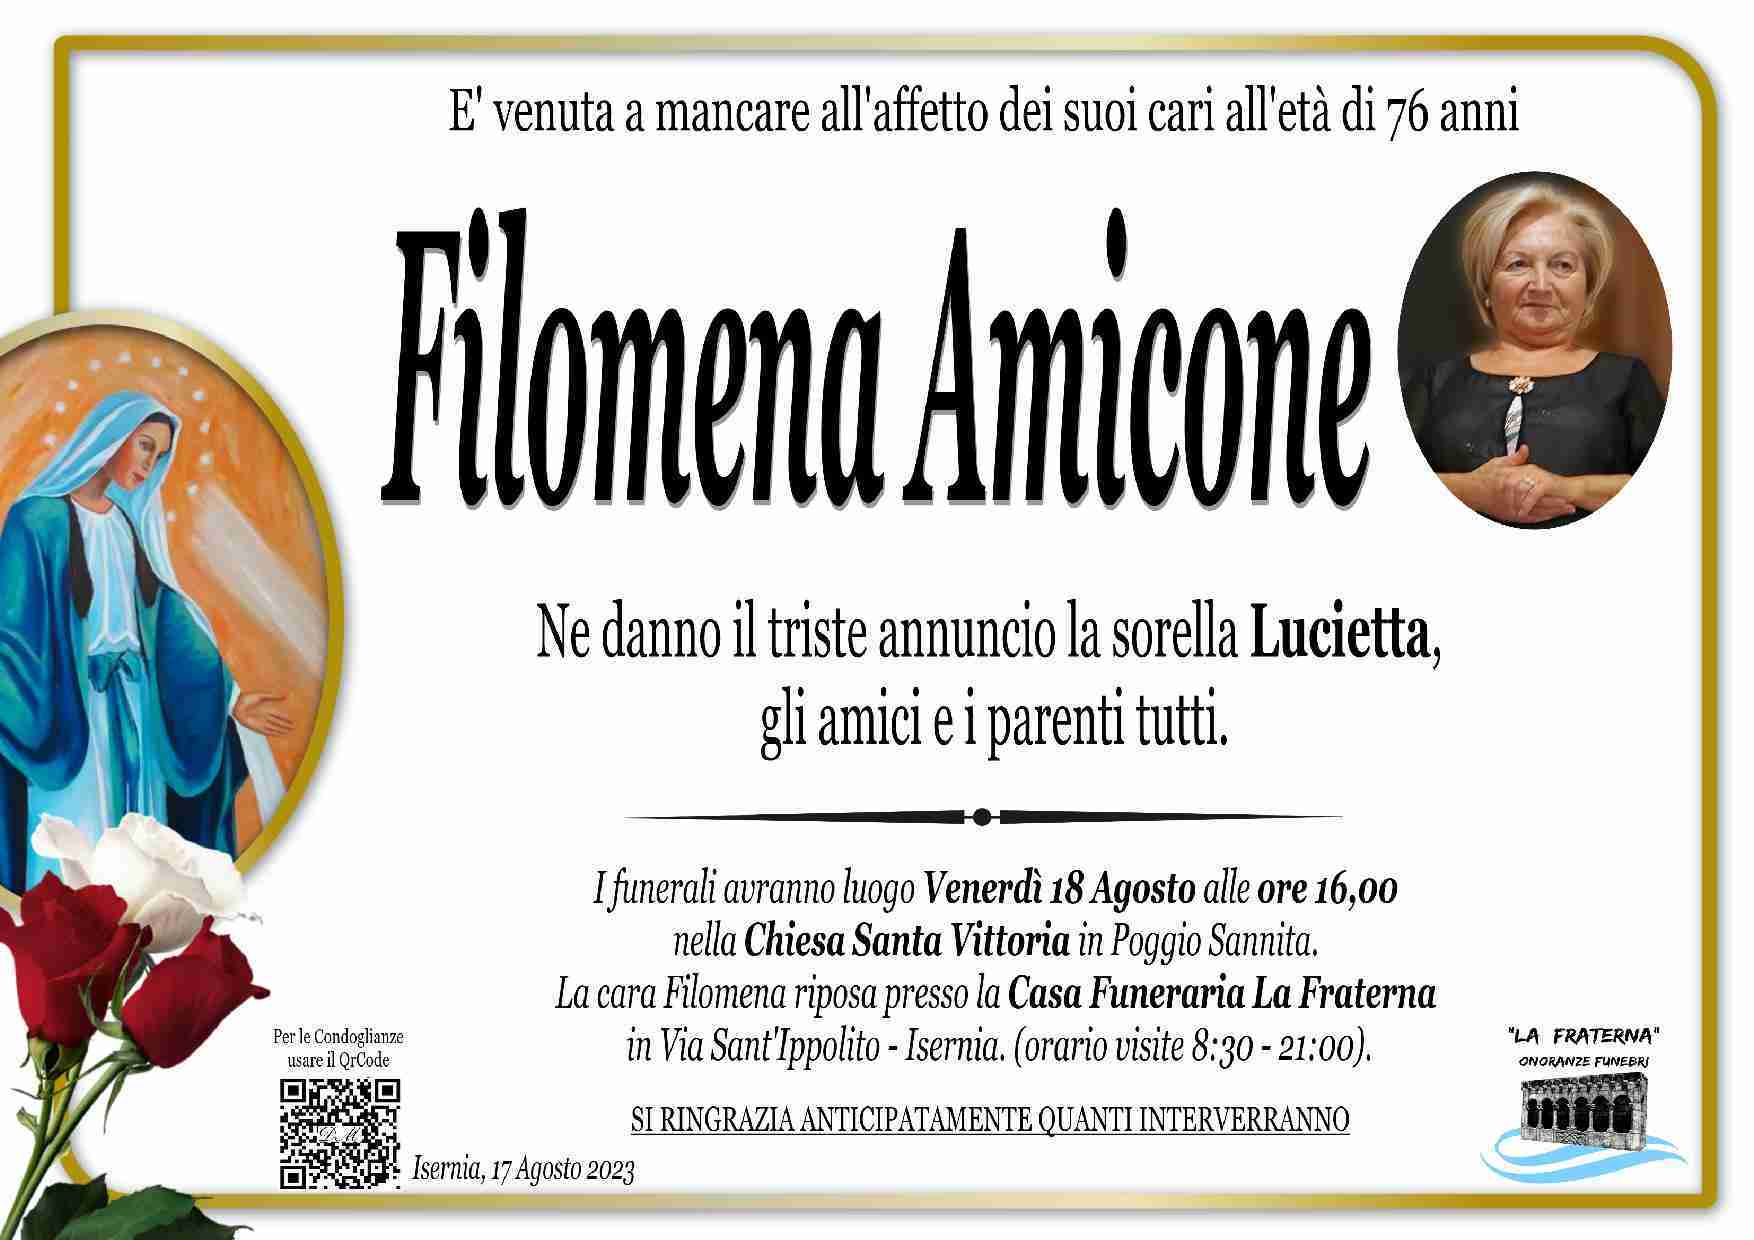 Filomena Amicone